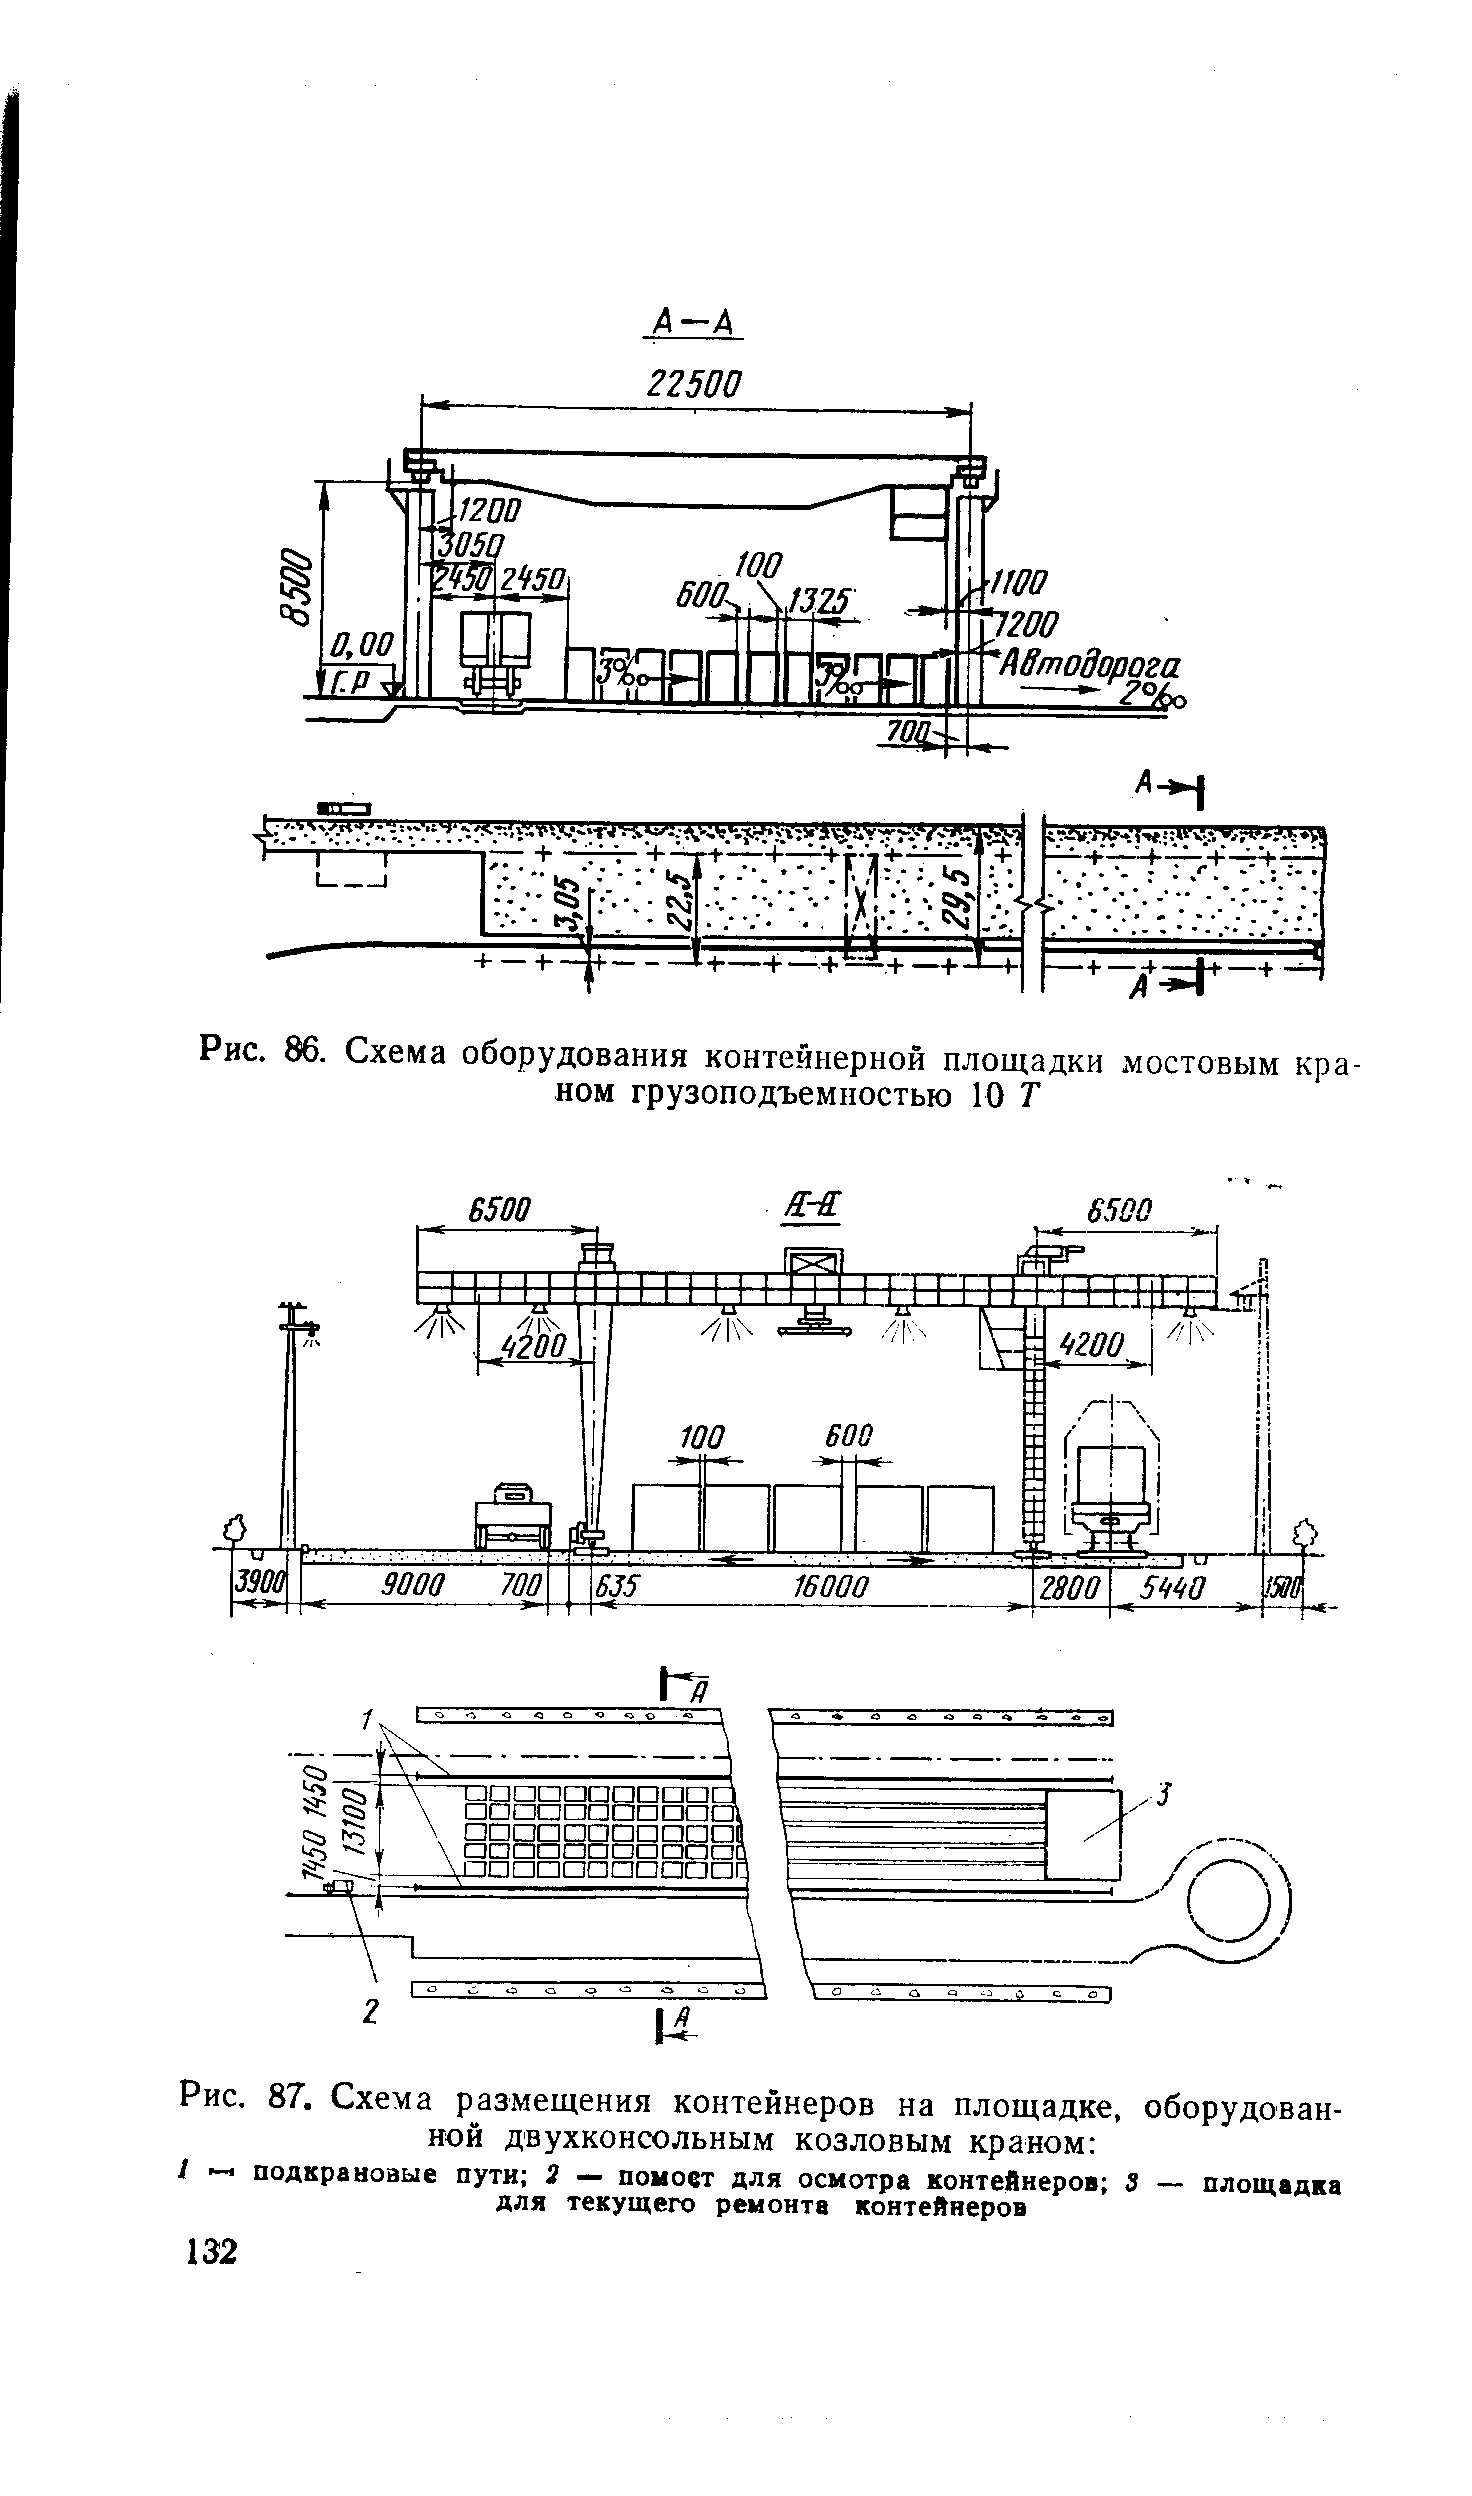 Рис. 87. Схема размещения контейнеров на площадке, оборудованной двухконсольным козловым краном 
